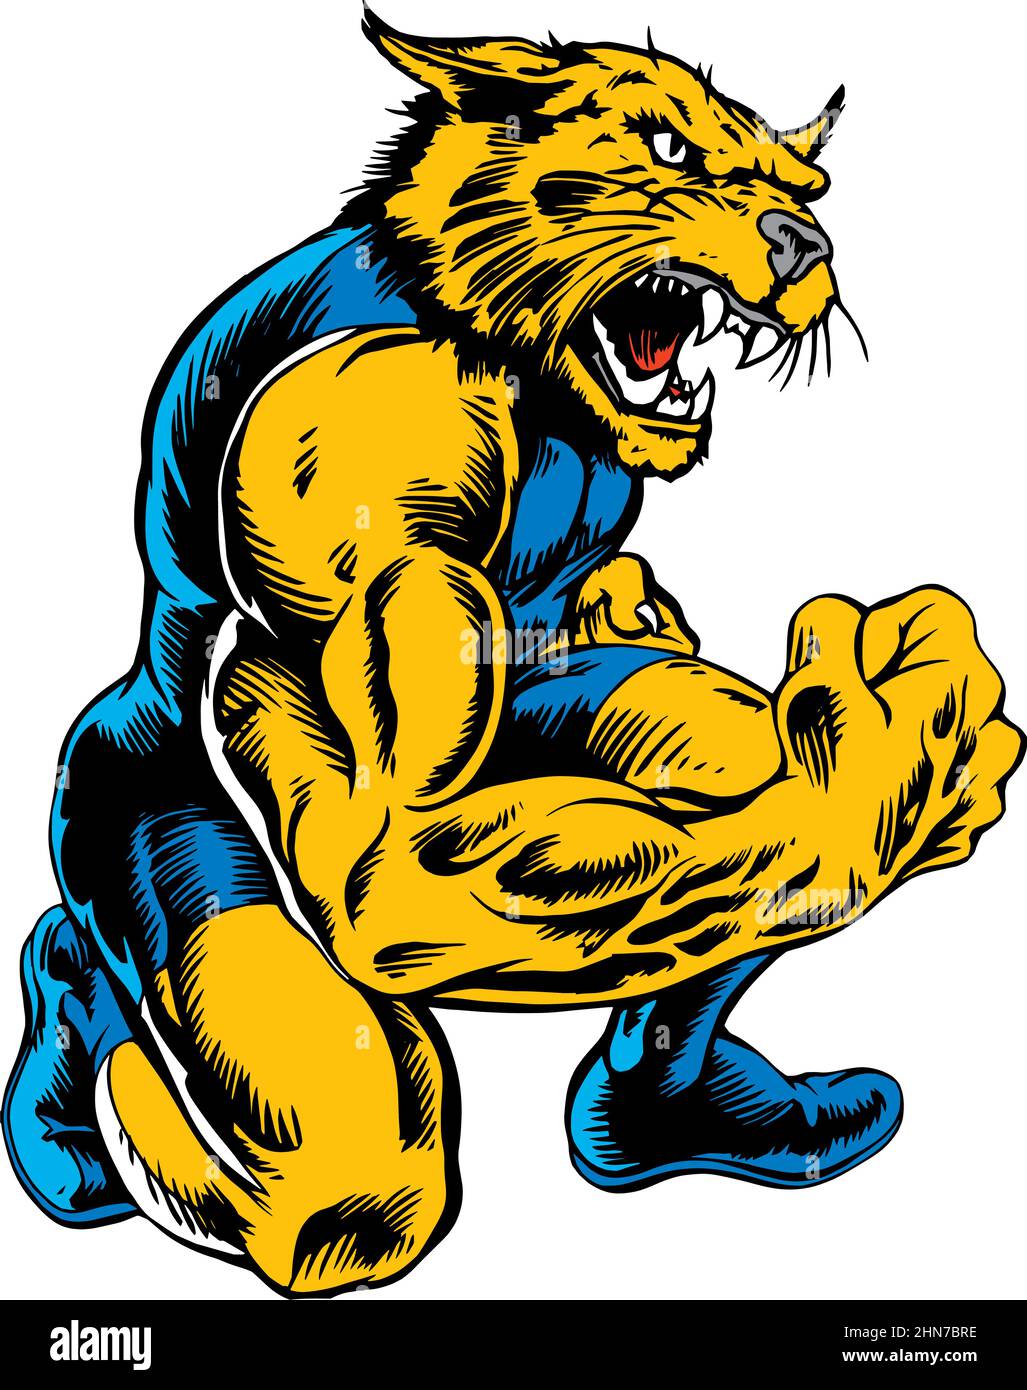 Wildcat Mascot Wrestler Vector Illustration Stock Vector